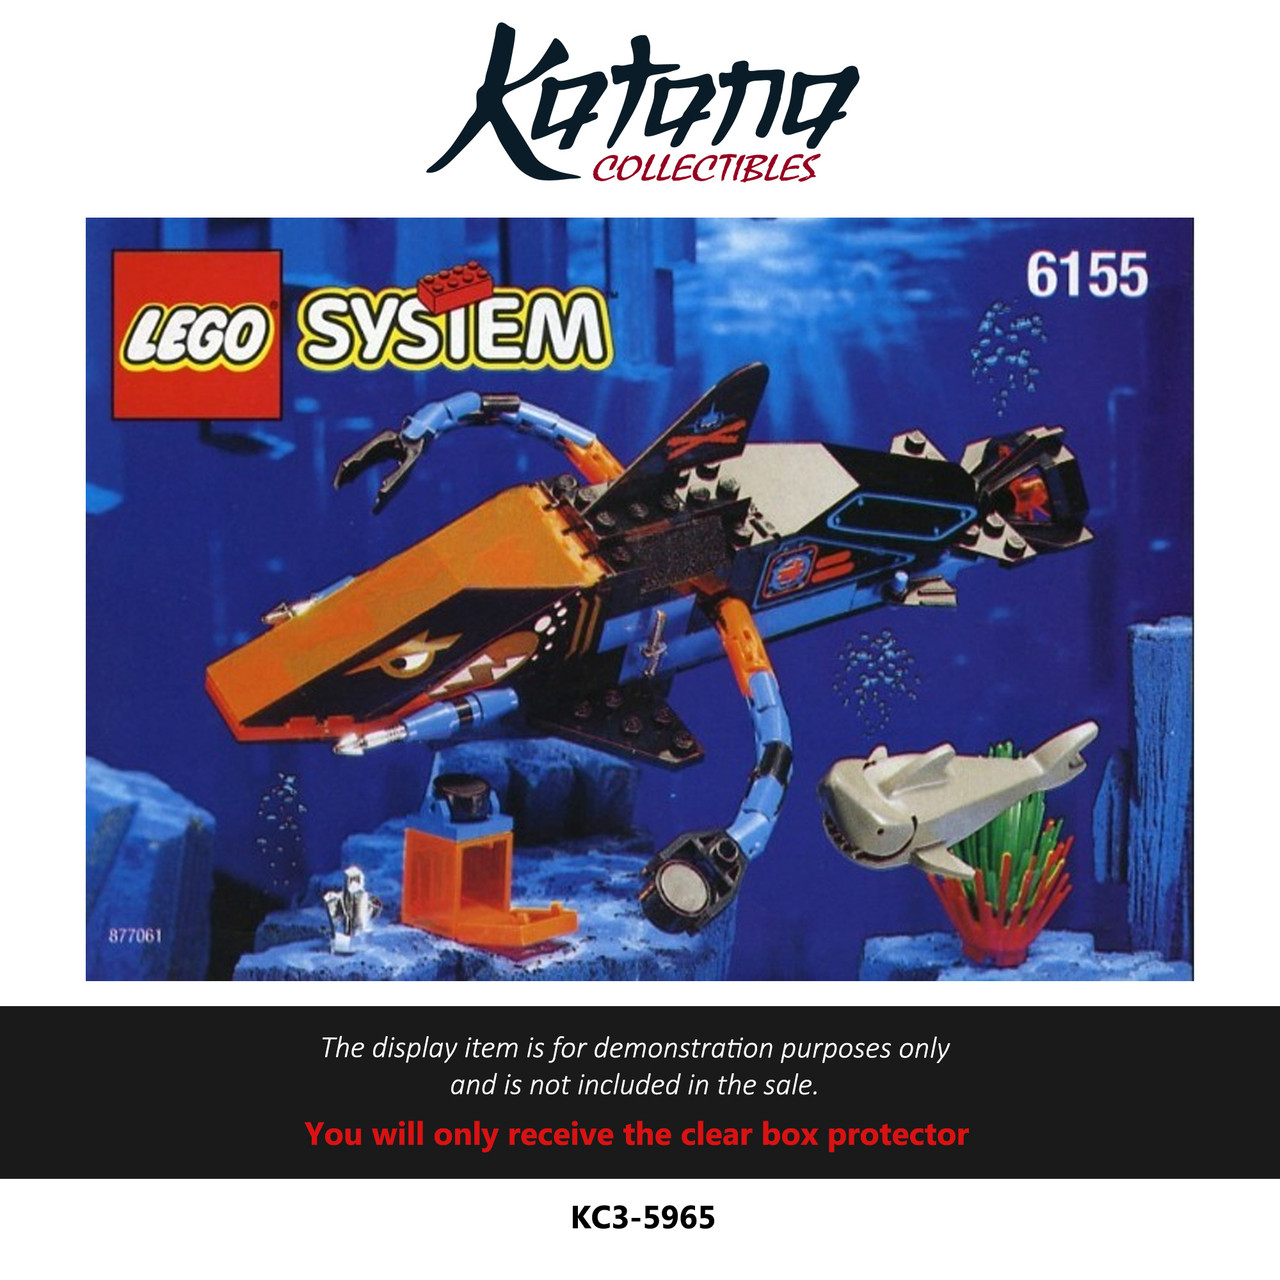 Katana Collectibles Protector For Lego Sysiem 6155 Deep Sea Predator